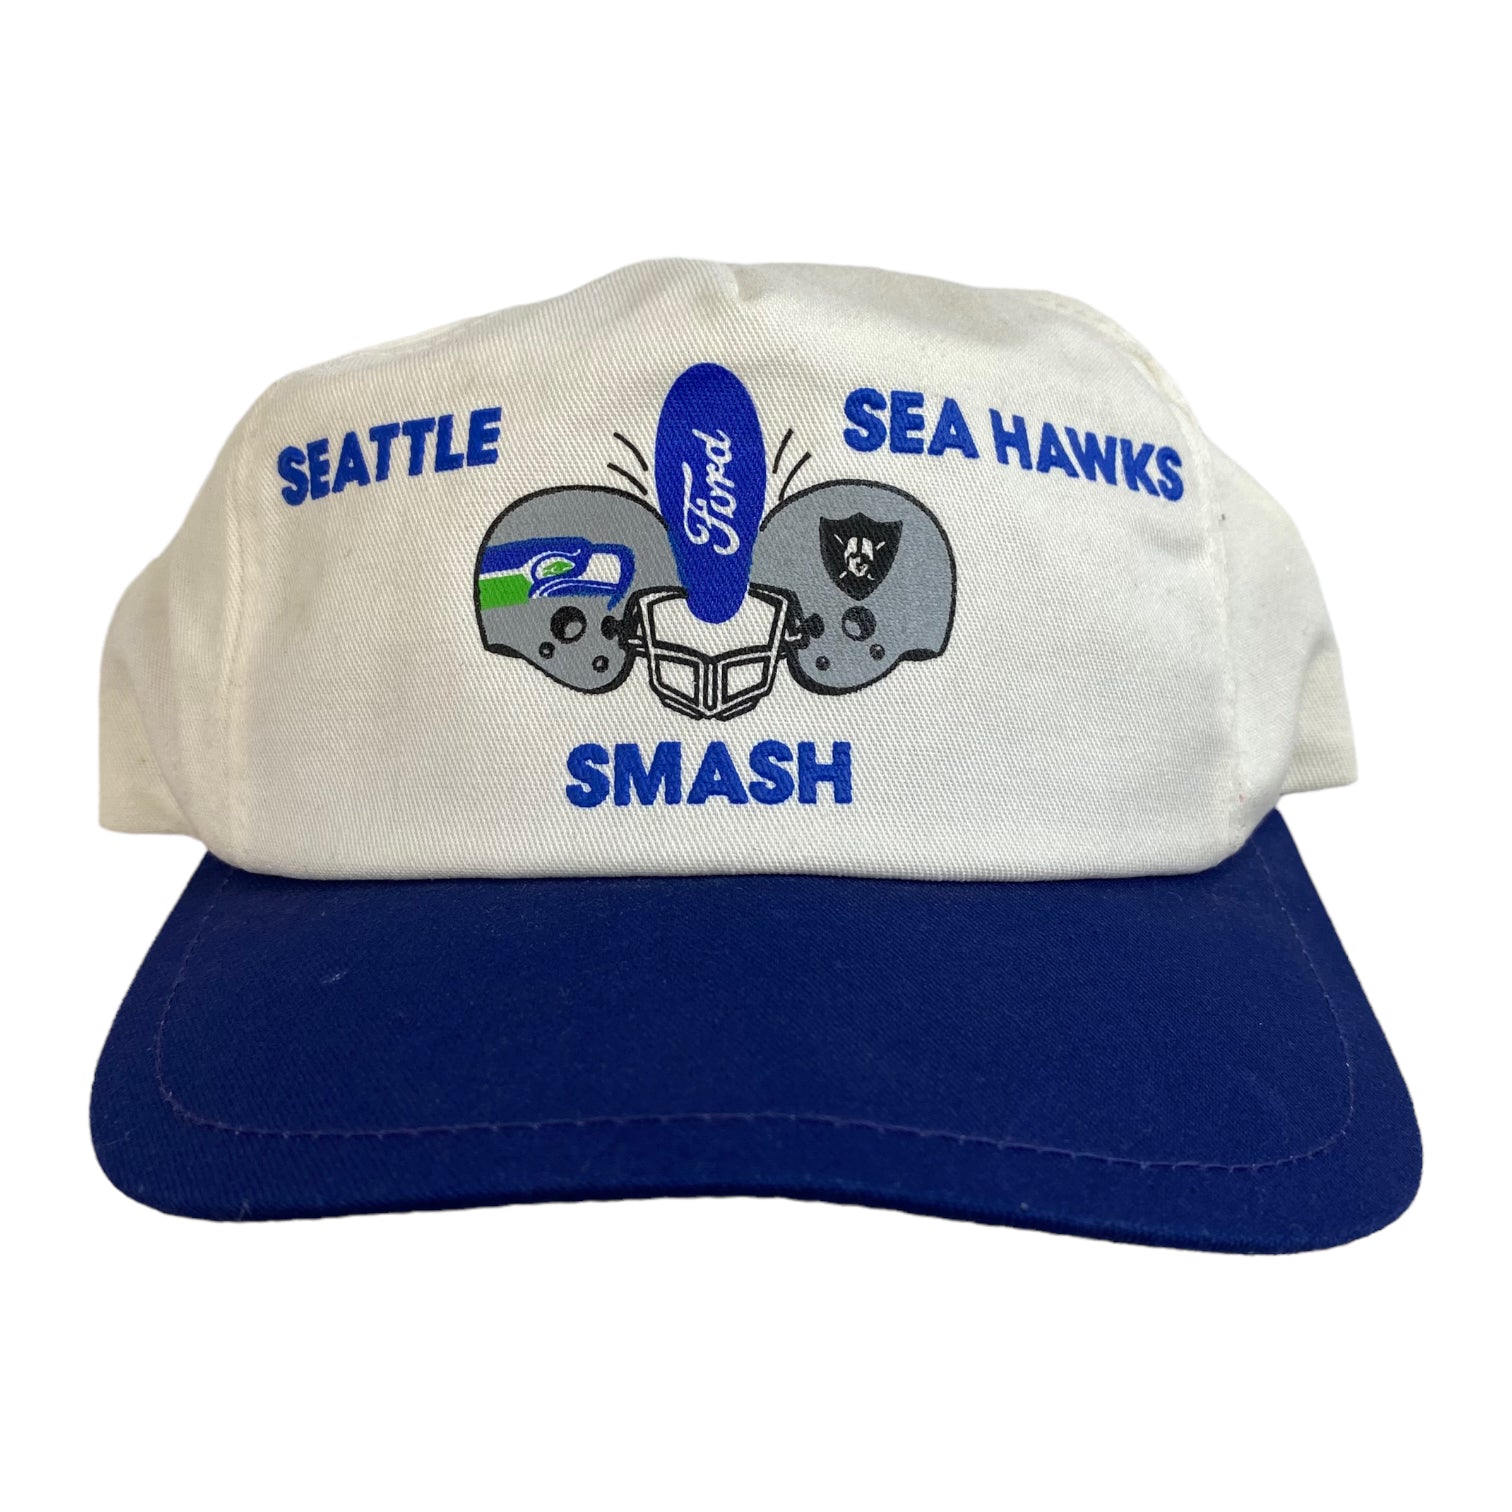 Vintage Seattle Seahawks Smash Snapback